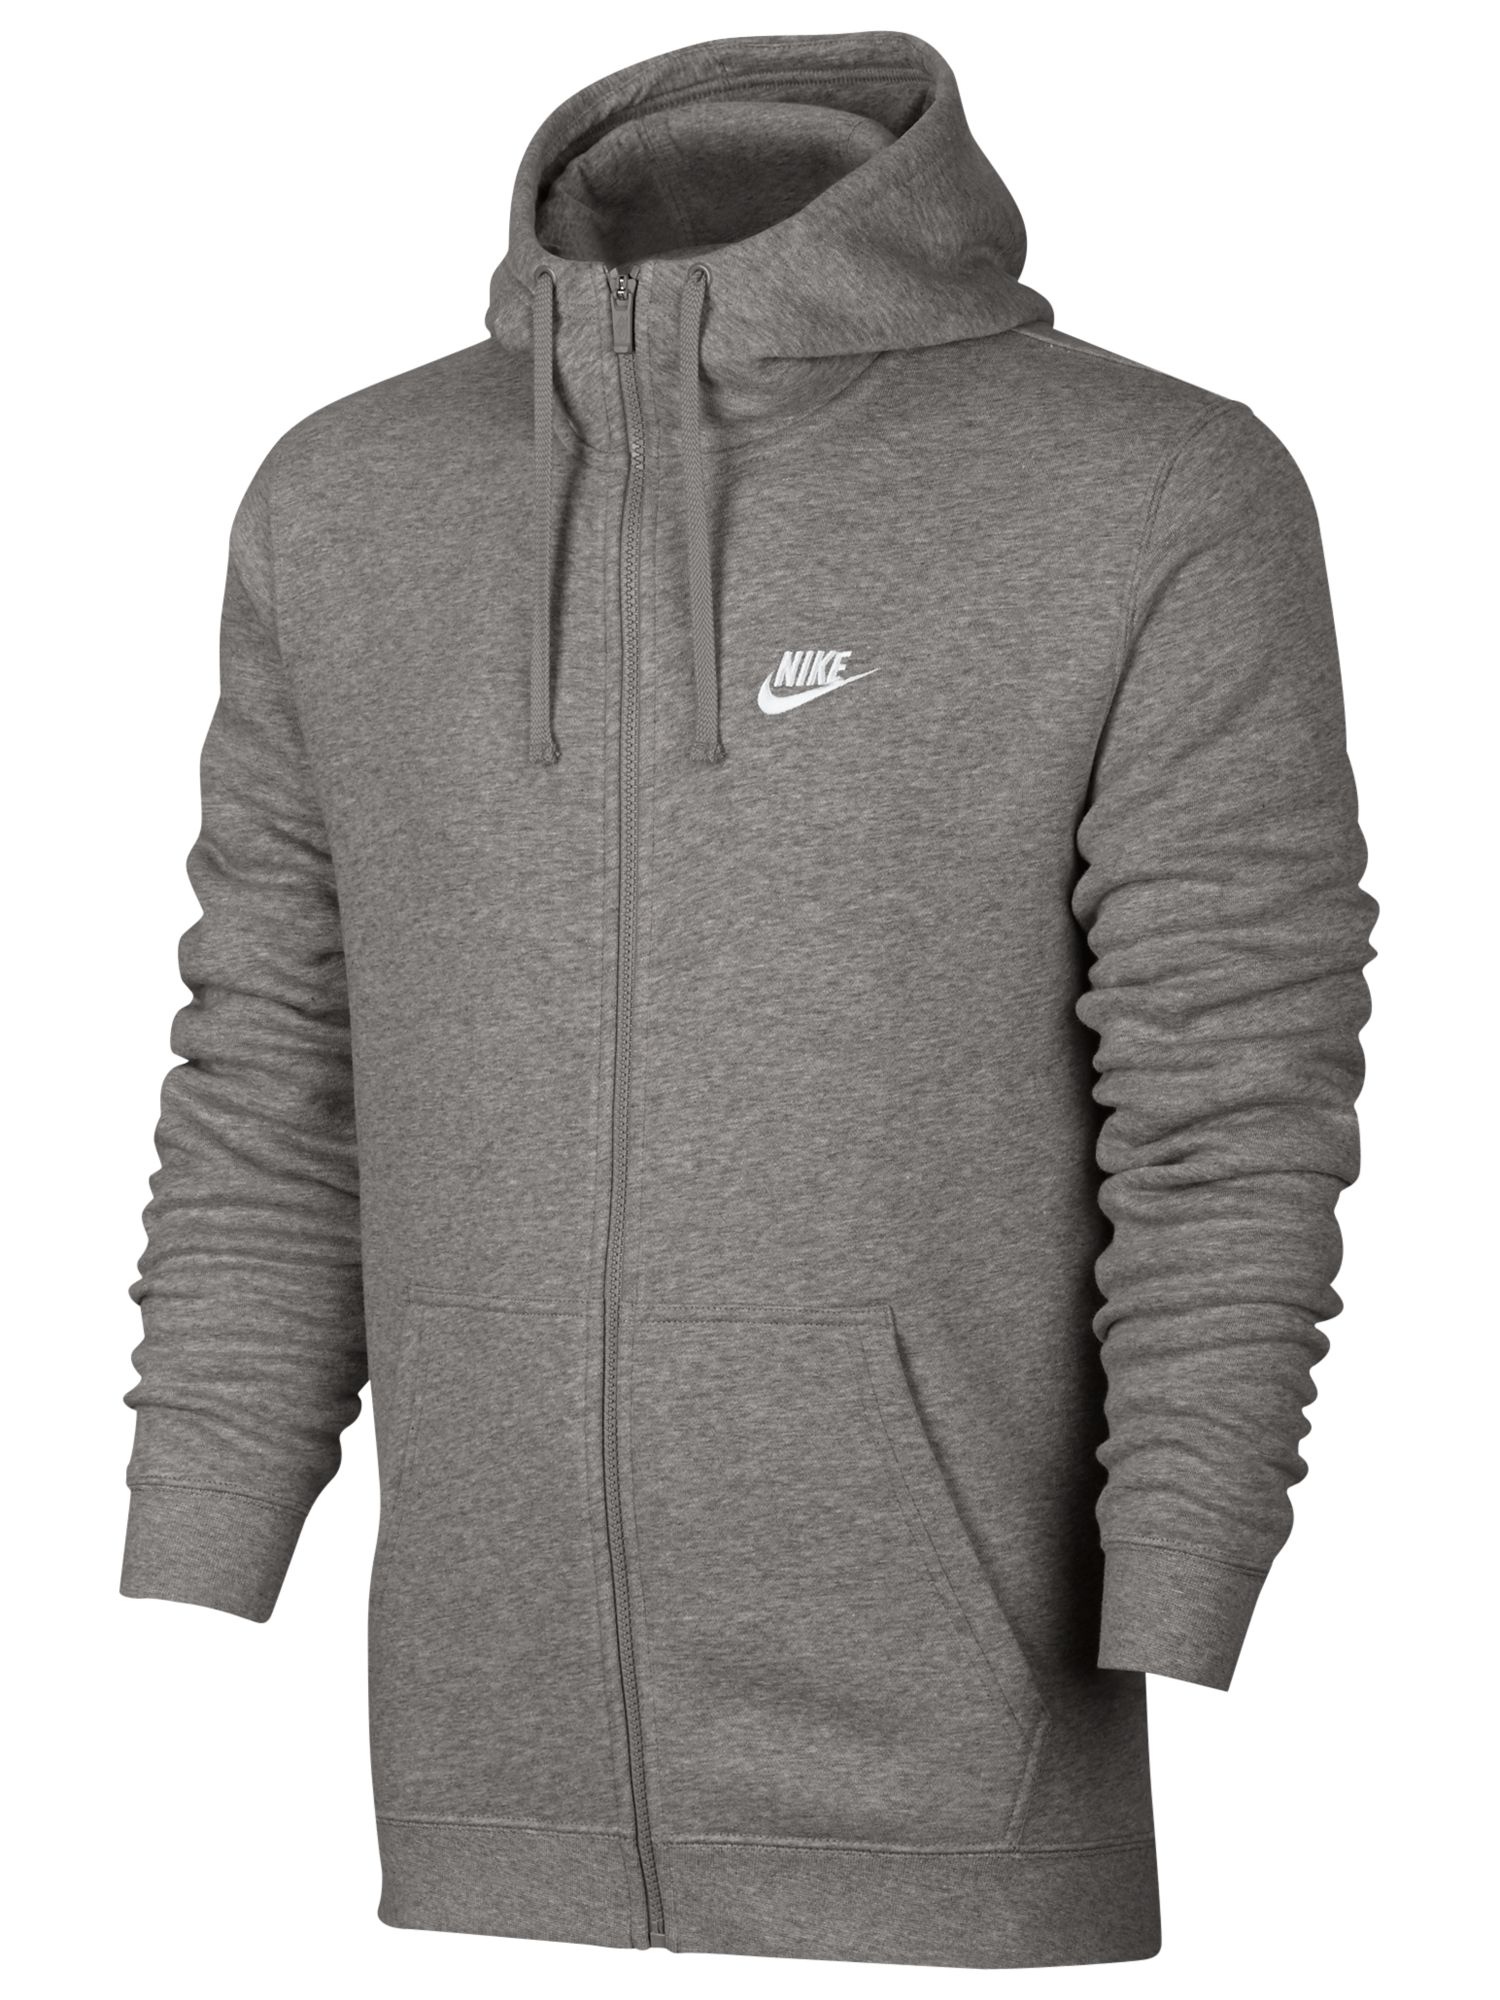 Nike Sportswear Hoodie | Grey at John Lewis & Partners